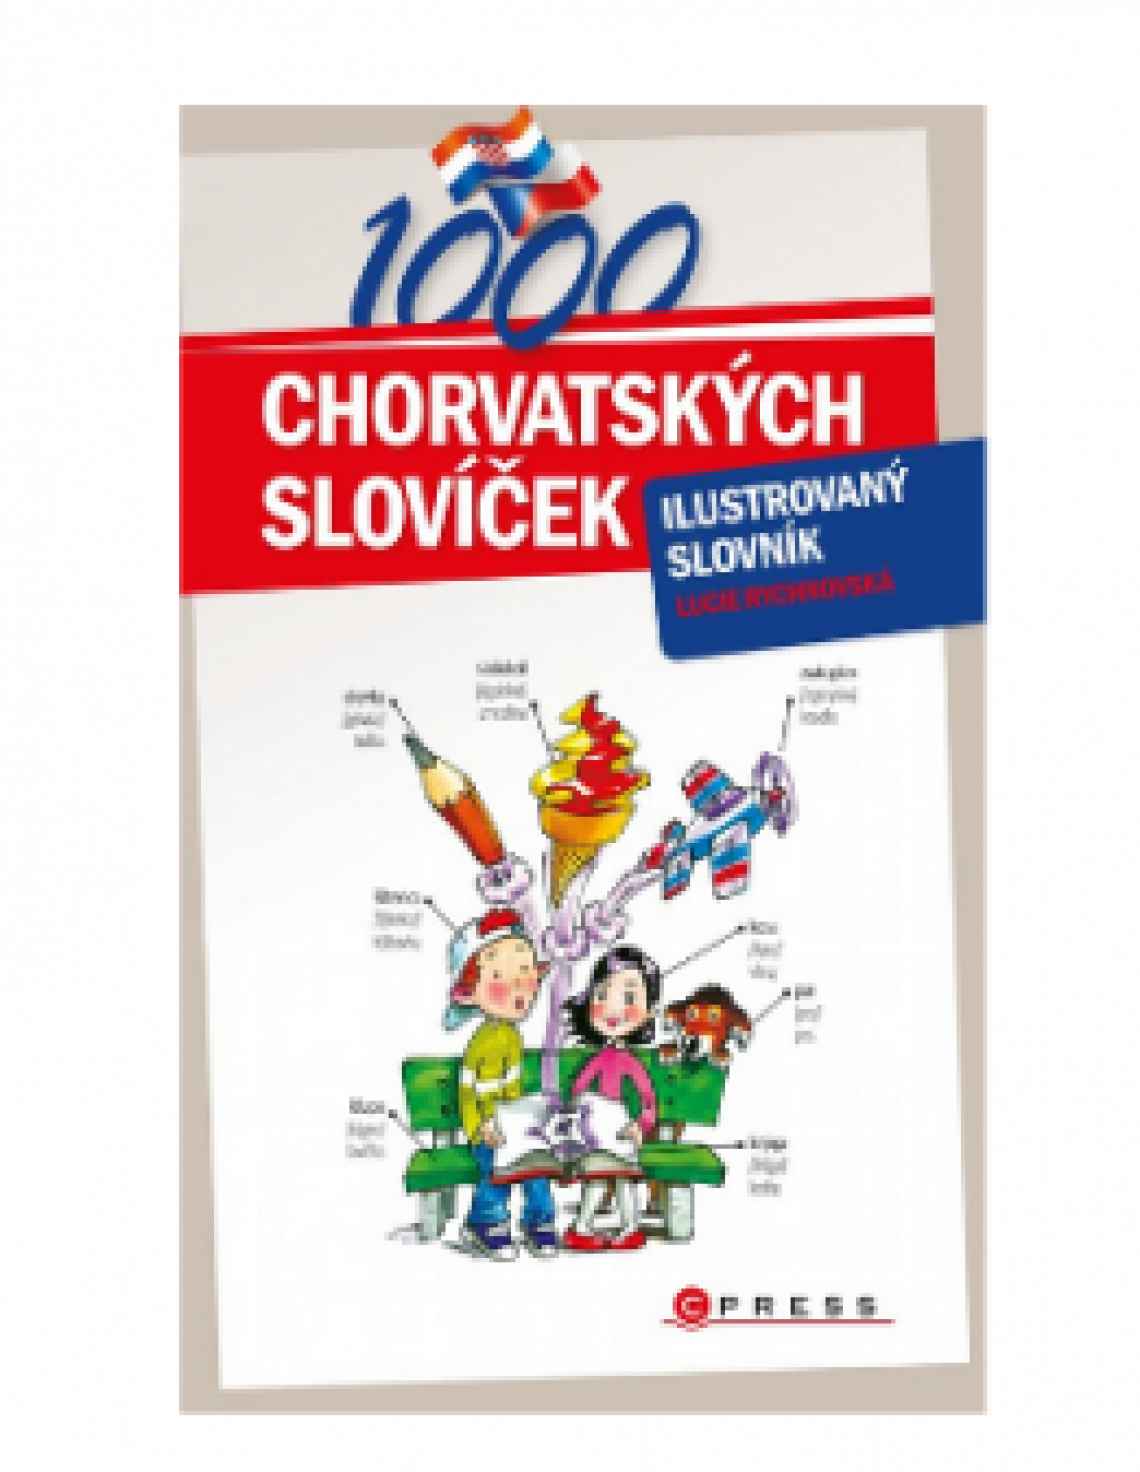 1000 chorvatských slovíček